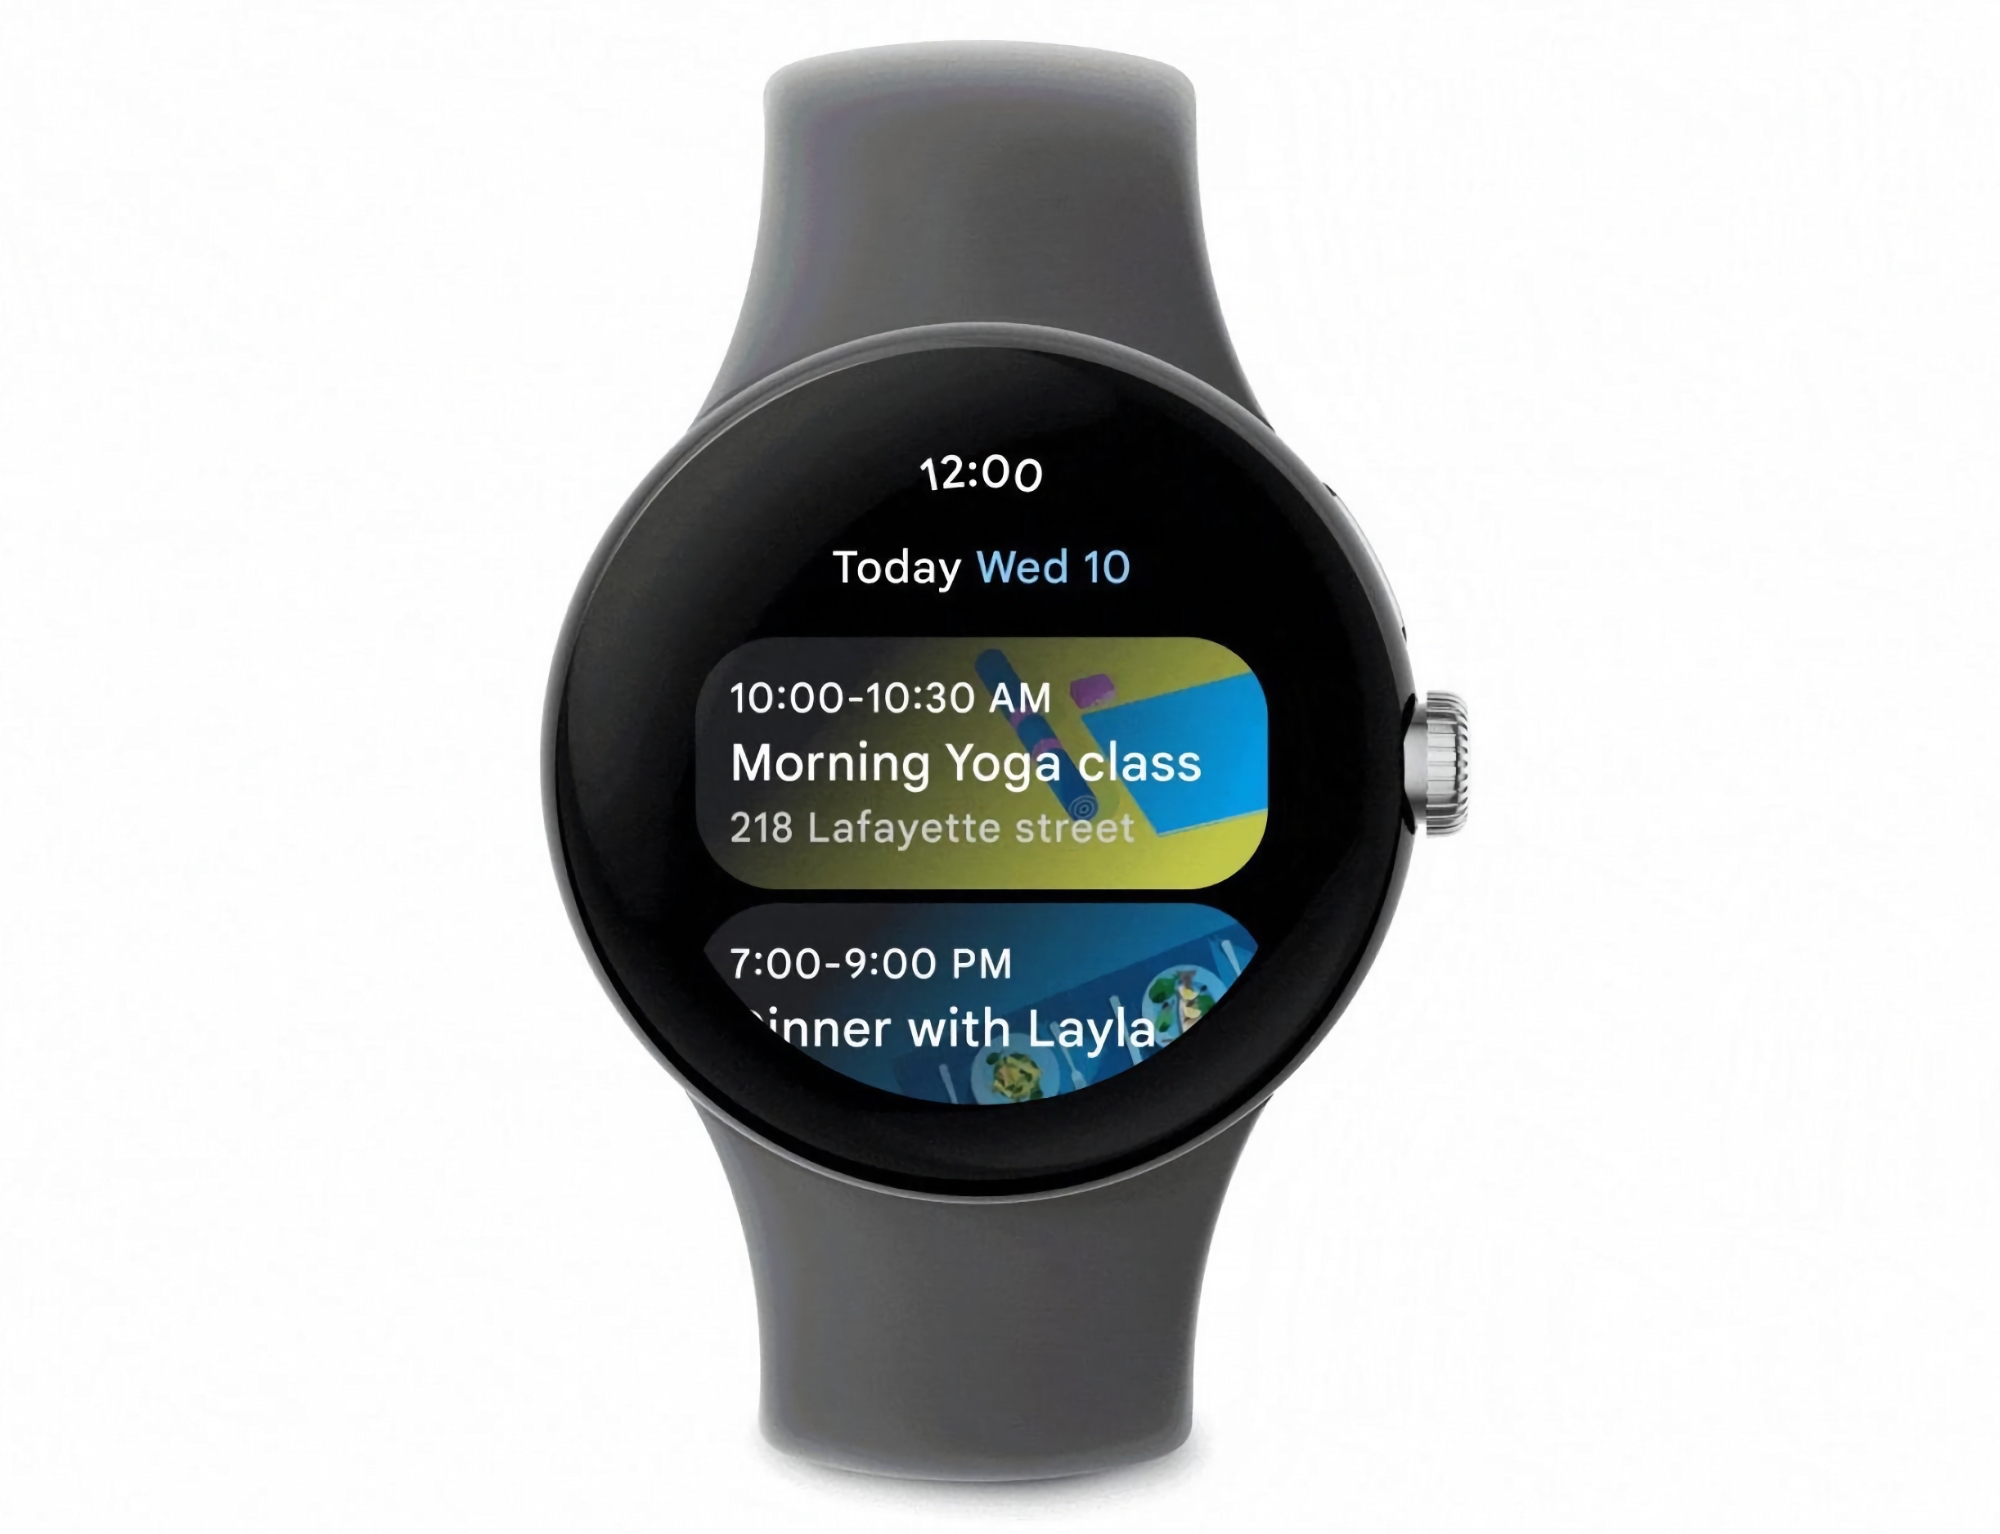 Nutzer von Wear OS-Smartwatches haben die Google Kalender-App